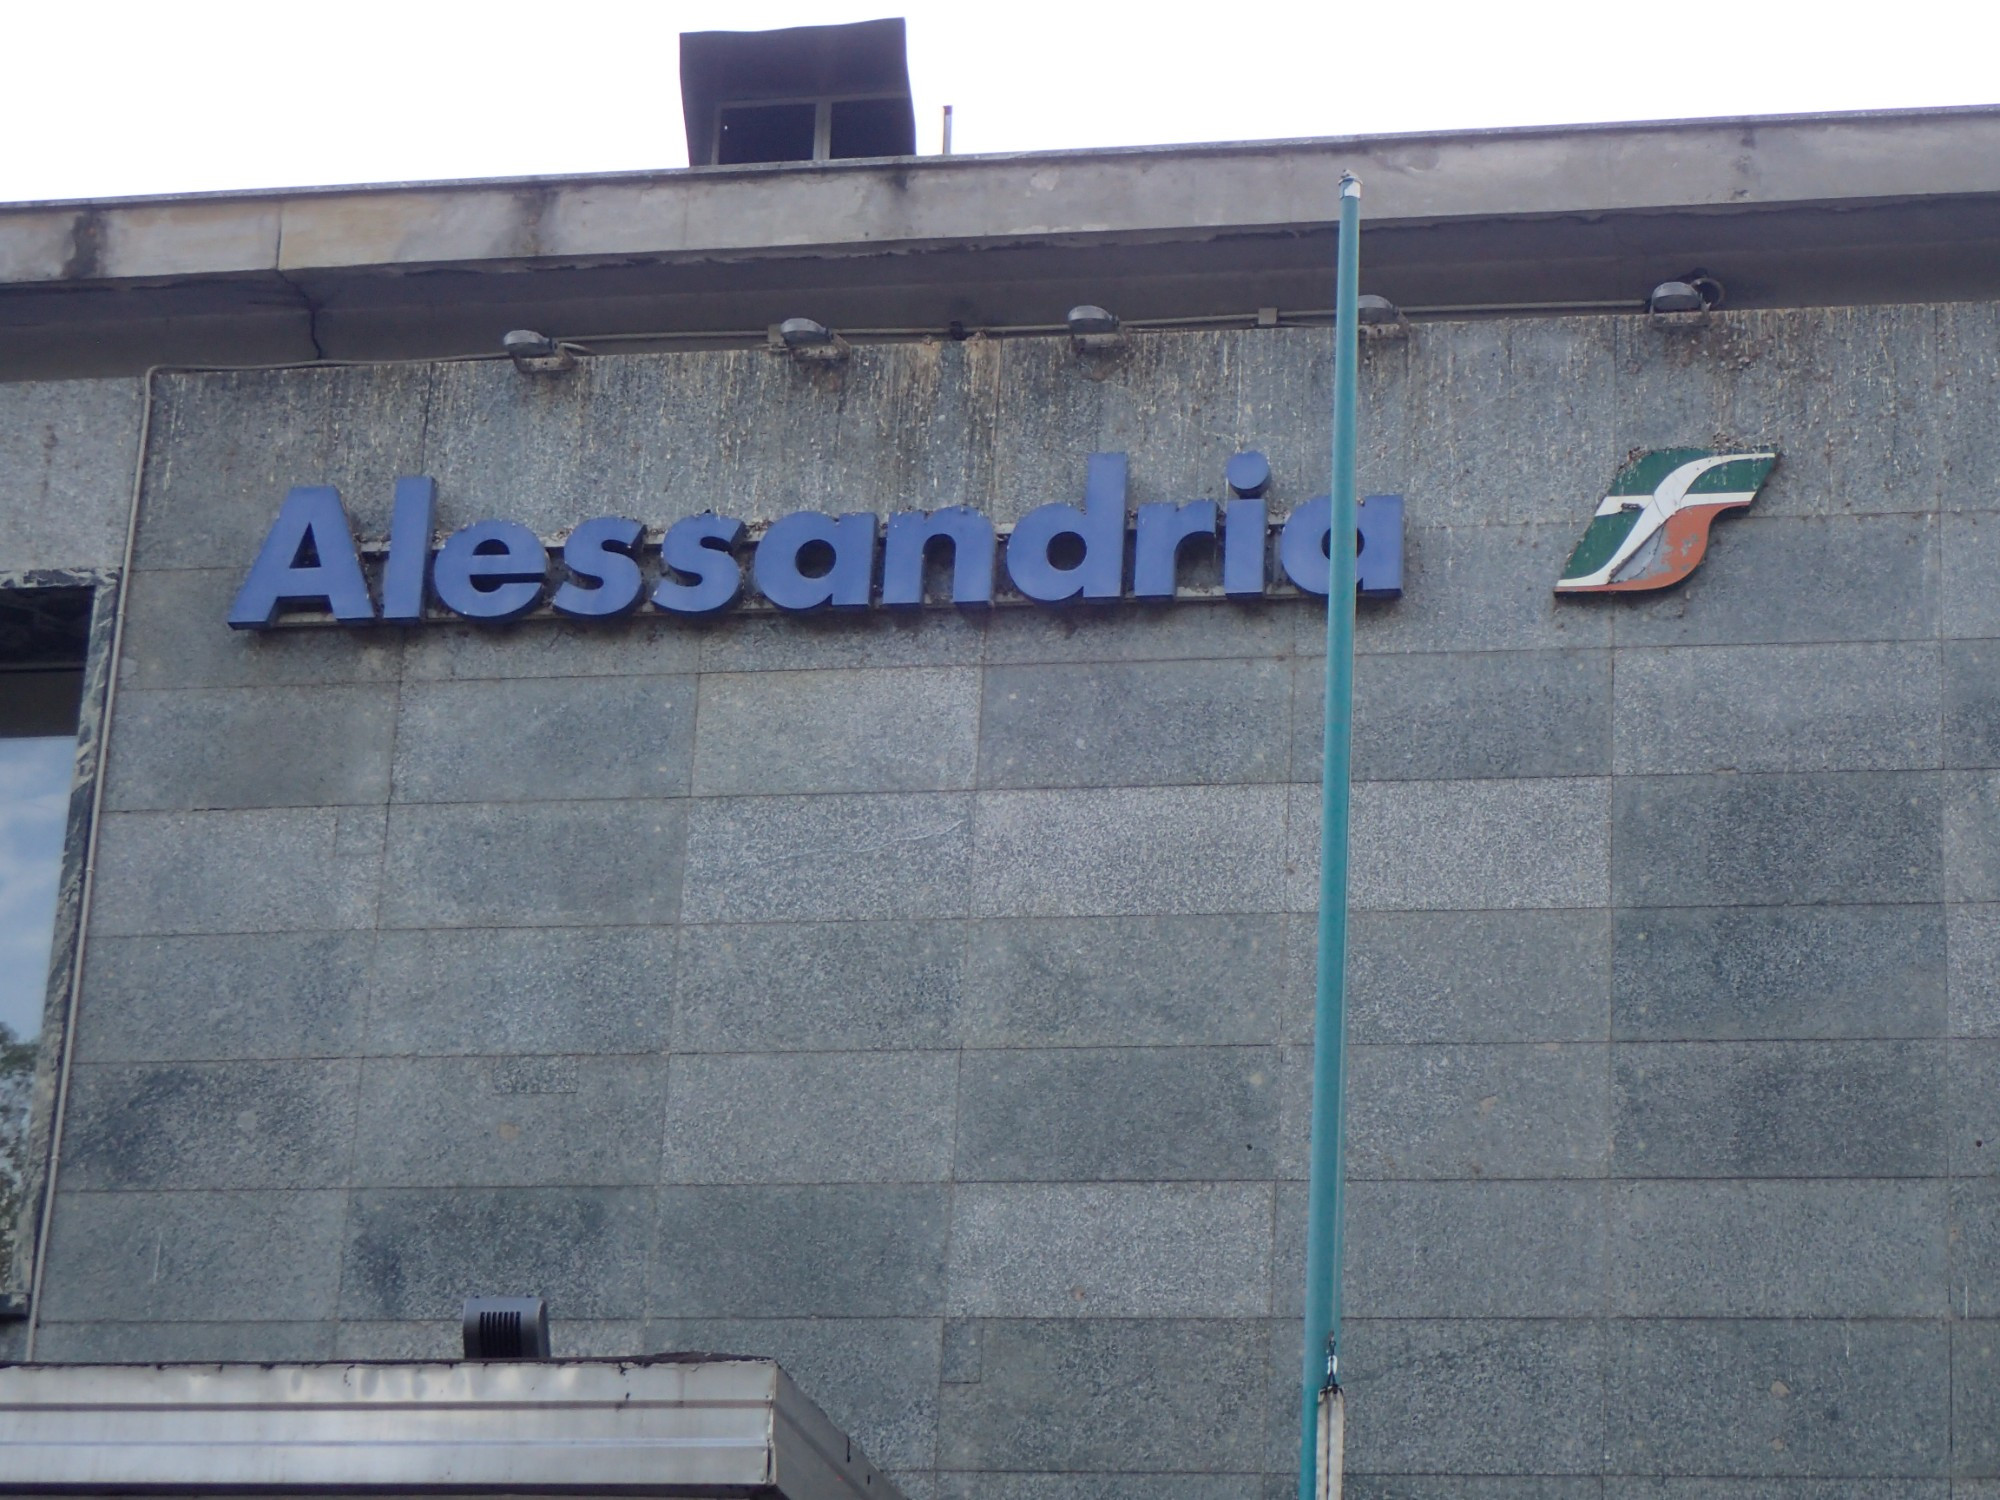 Alessandria Train Station, Italy